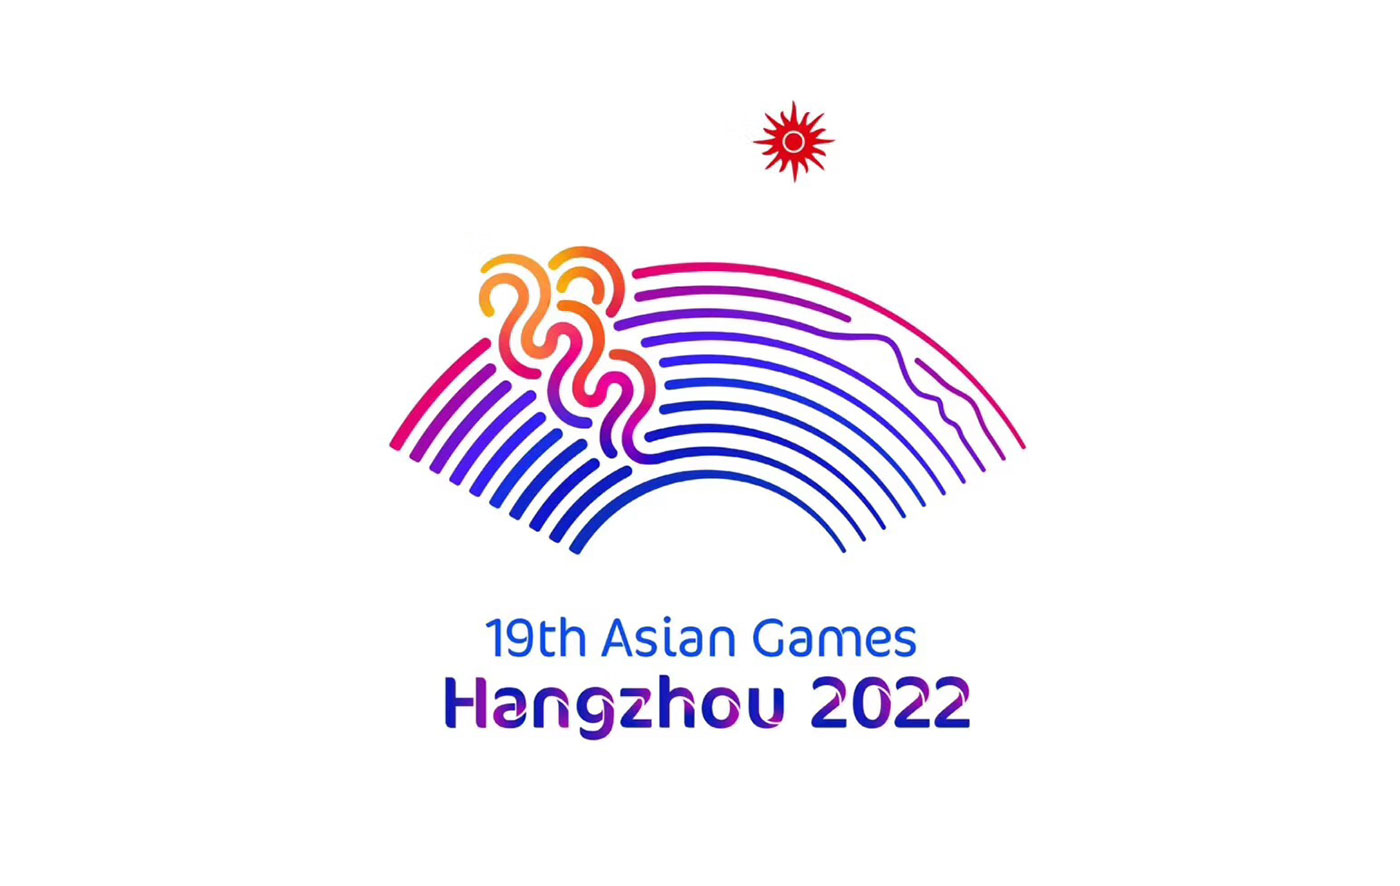 杭州2022年第19届亚运会会徽揭晓